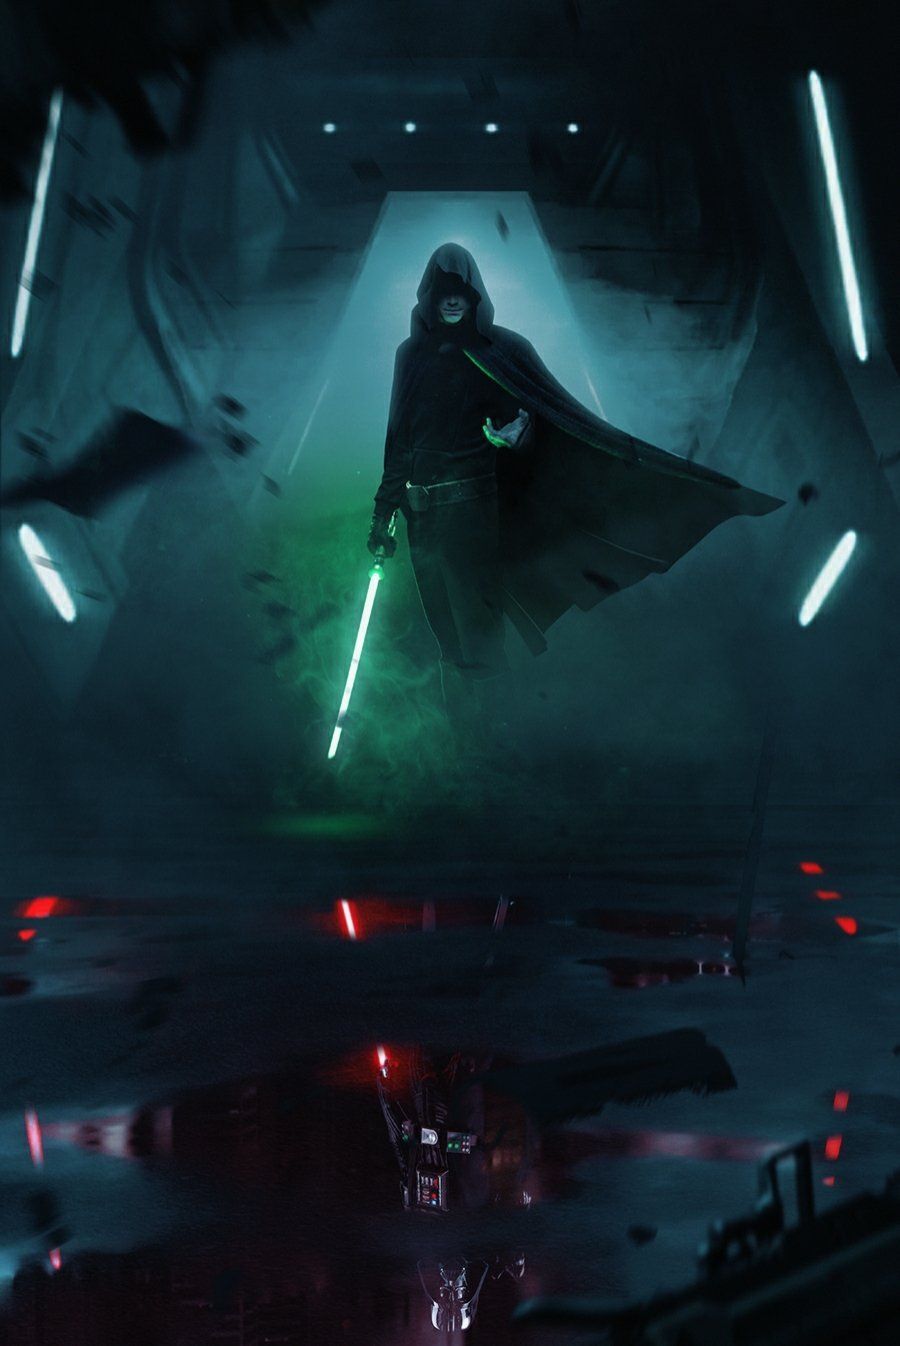 Luke Skywalker by BossLogic. Star wars wallpaper, Star wars image, Star wars background